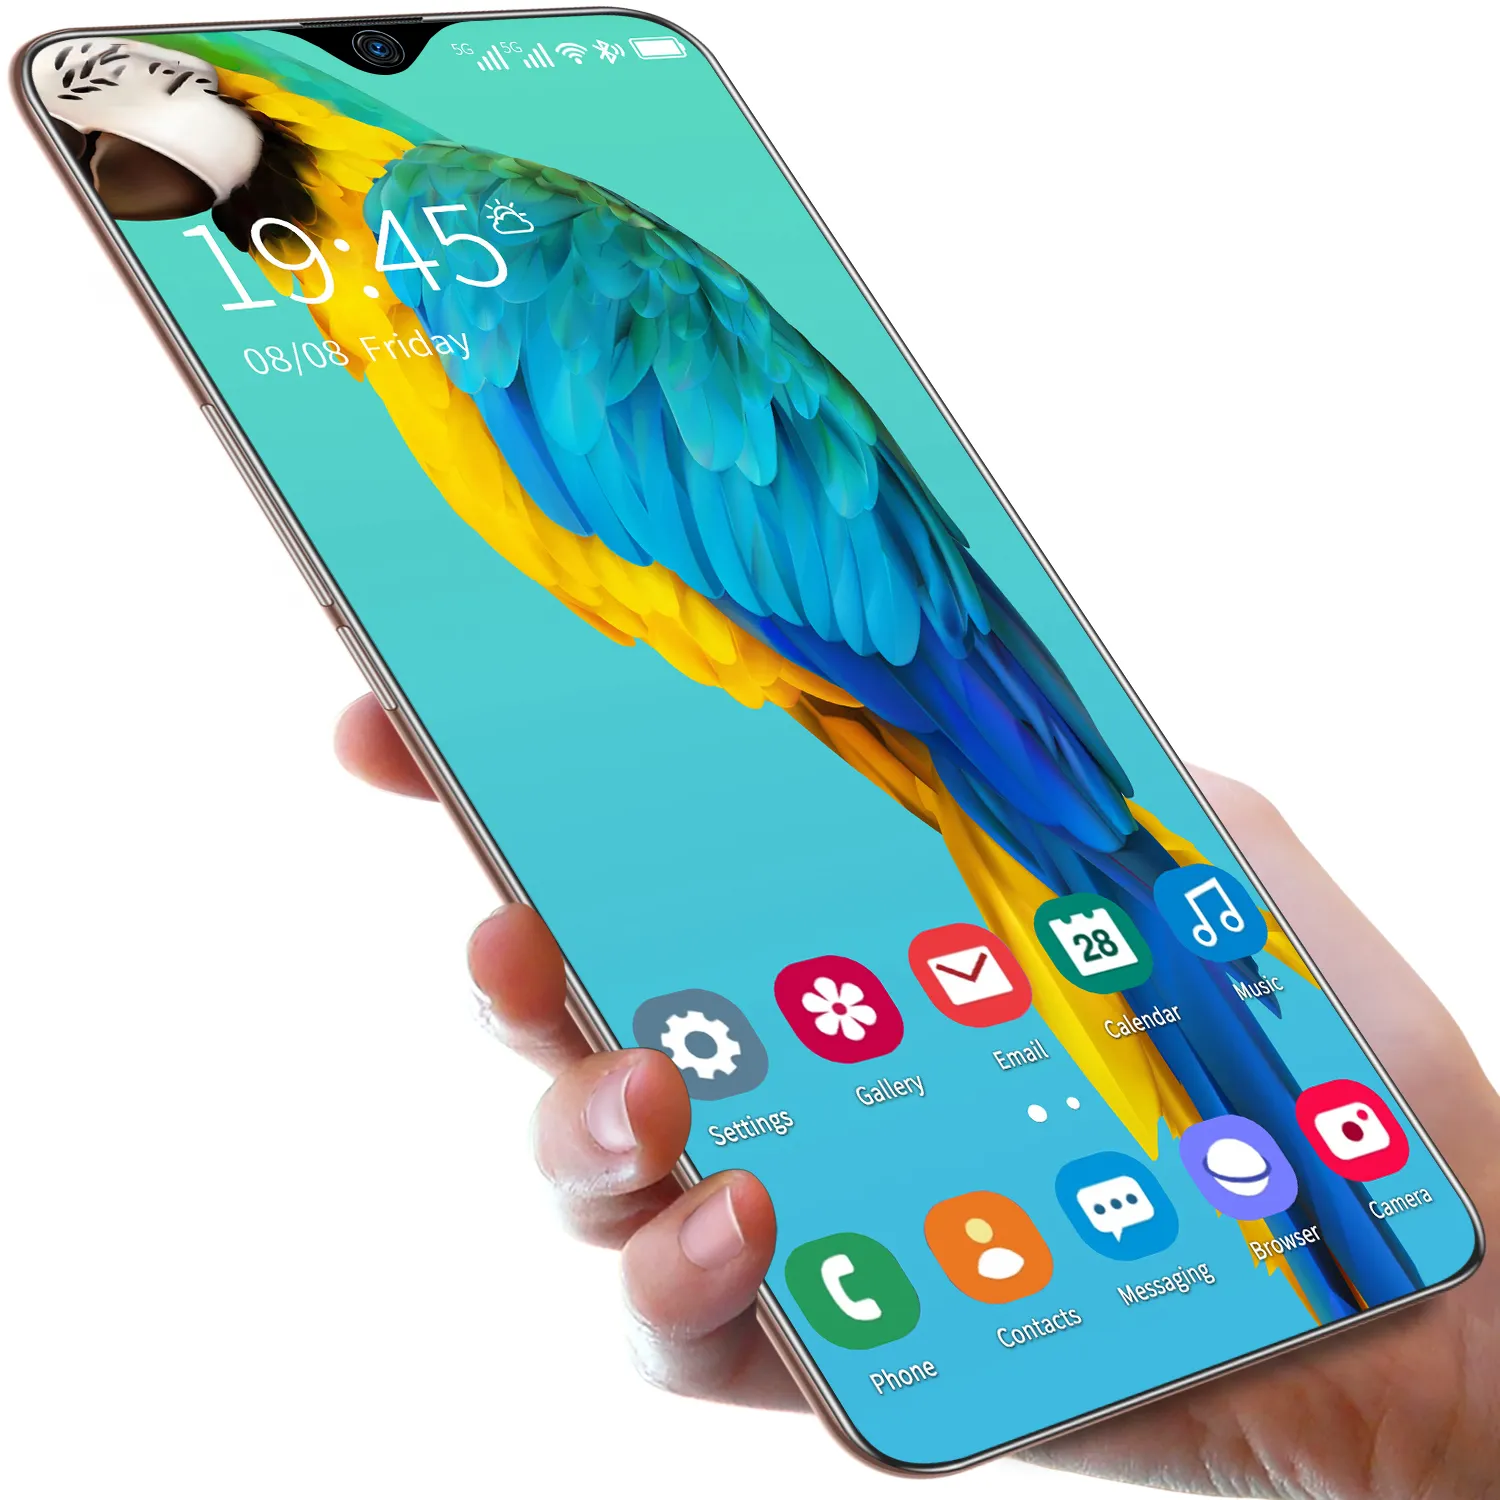 Smartphone Note 30 ultra 7.5 polegadas novo spot internacional Android 16 + 512gb, fornecimento direto da fábrica